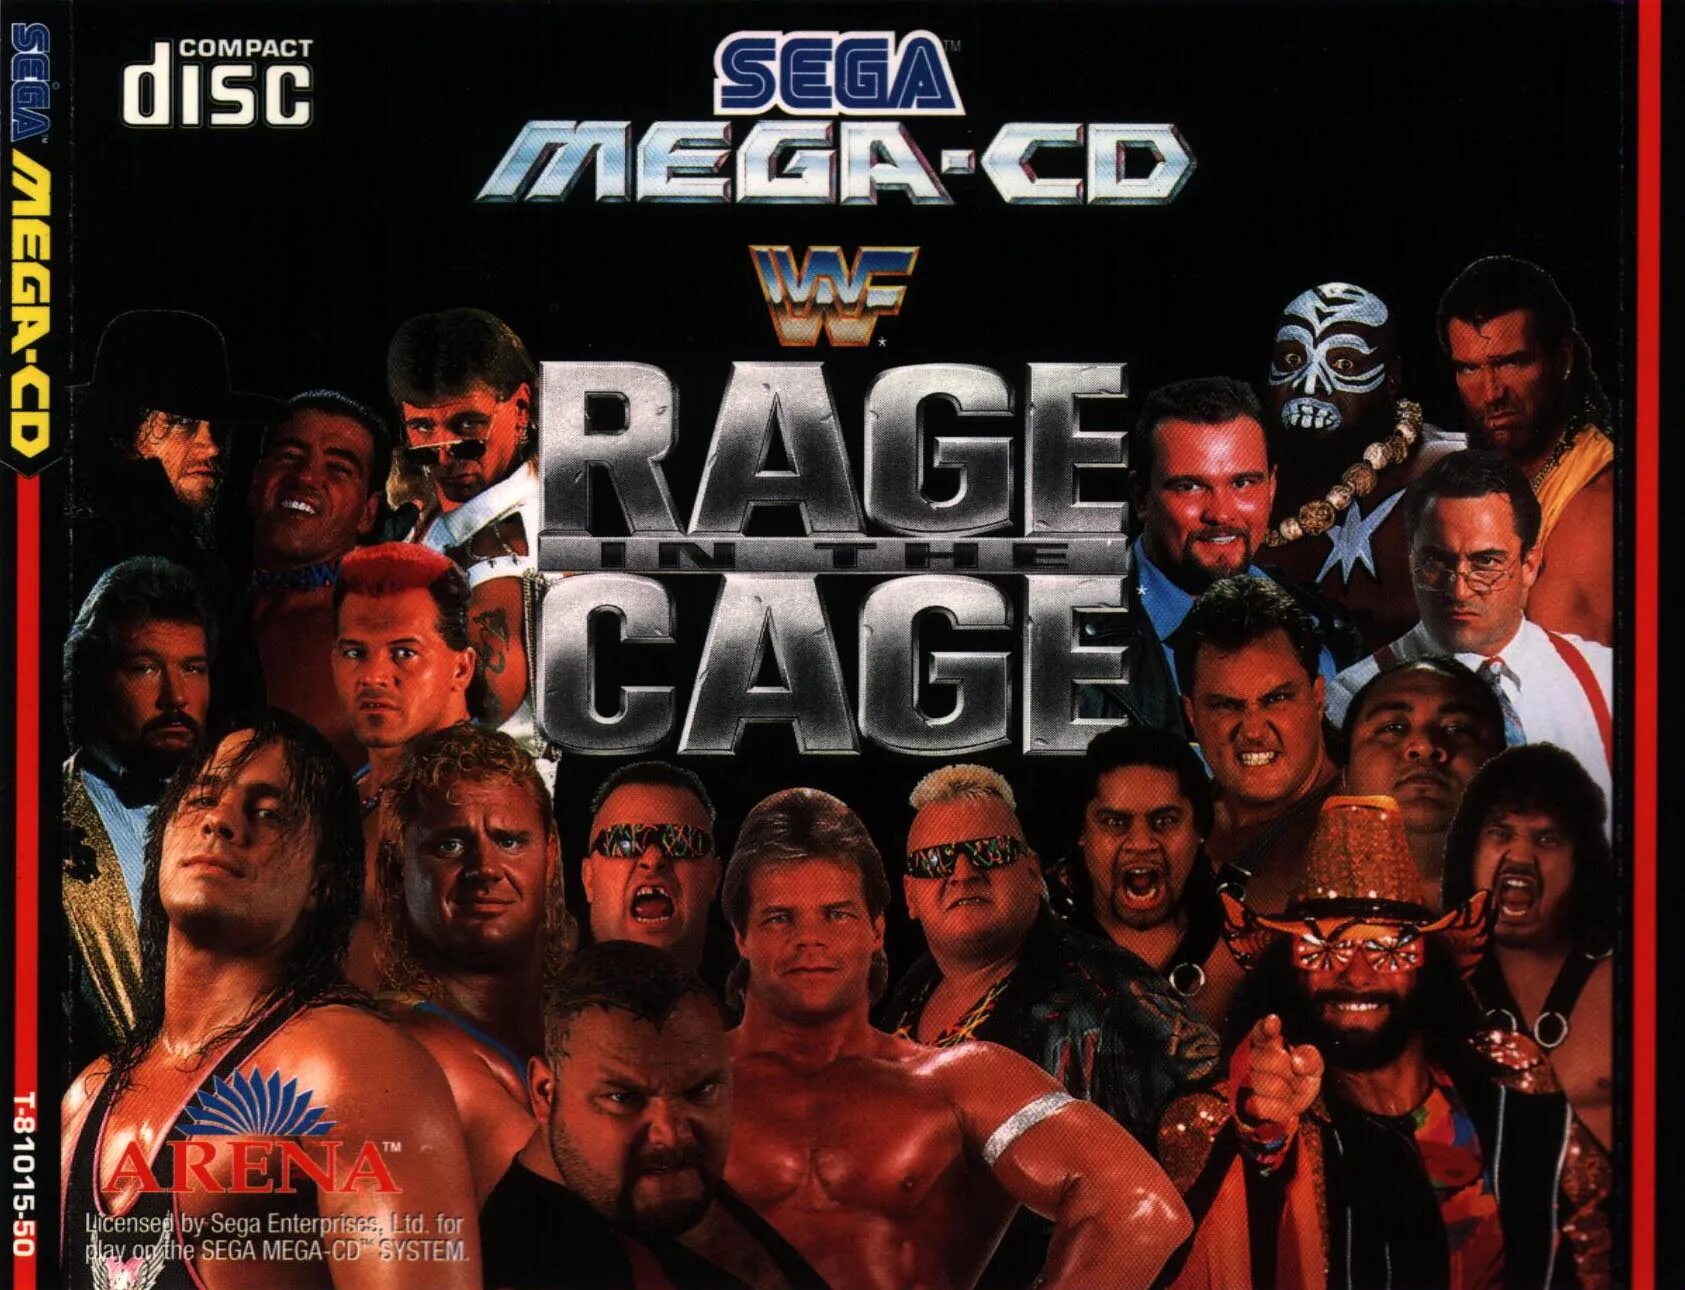 Рестлинг на Sega Mega-CD. Сега реслинг картридж. WWF Sega. Реслинг сега персонажи. Игра реслинг на сега